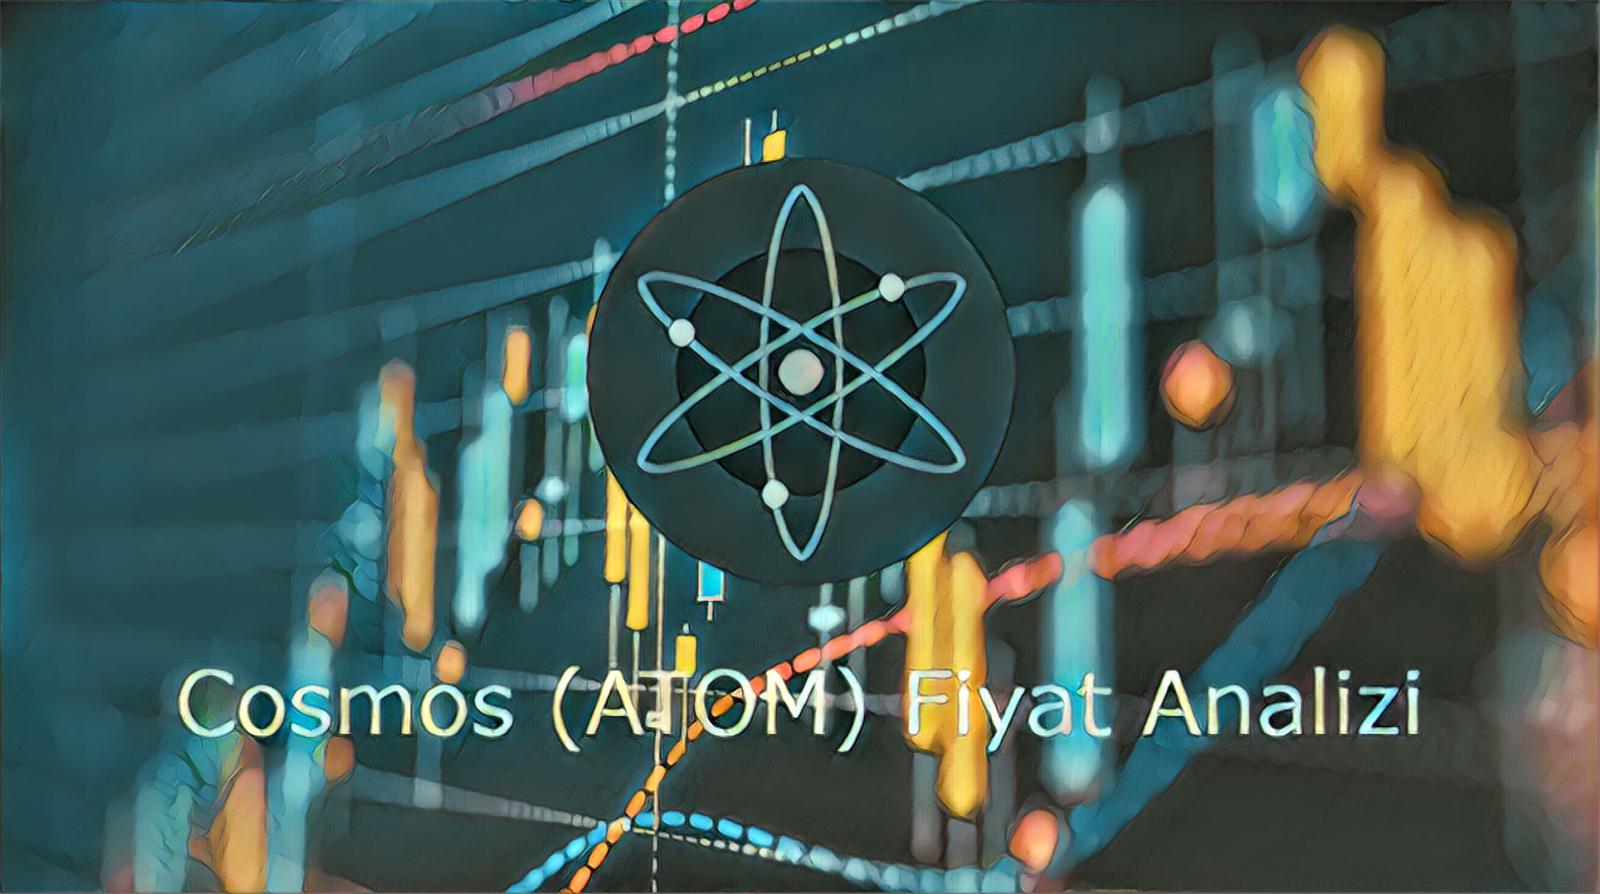 Cosmos (ATOM) Fiyat Analizi: 19 Nisan 2021